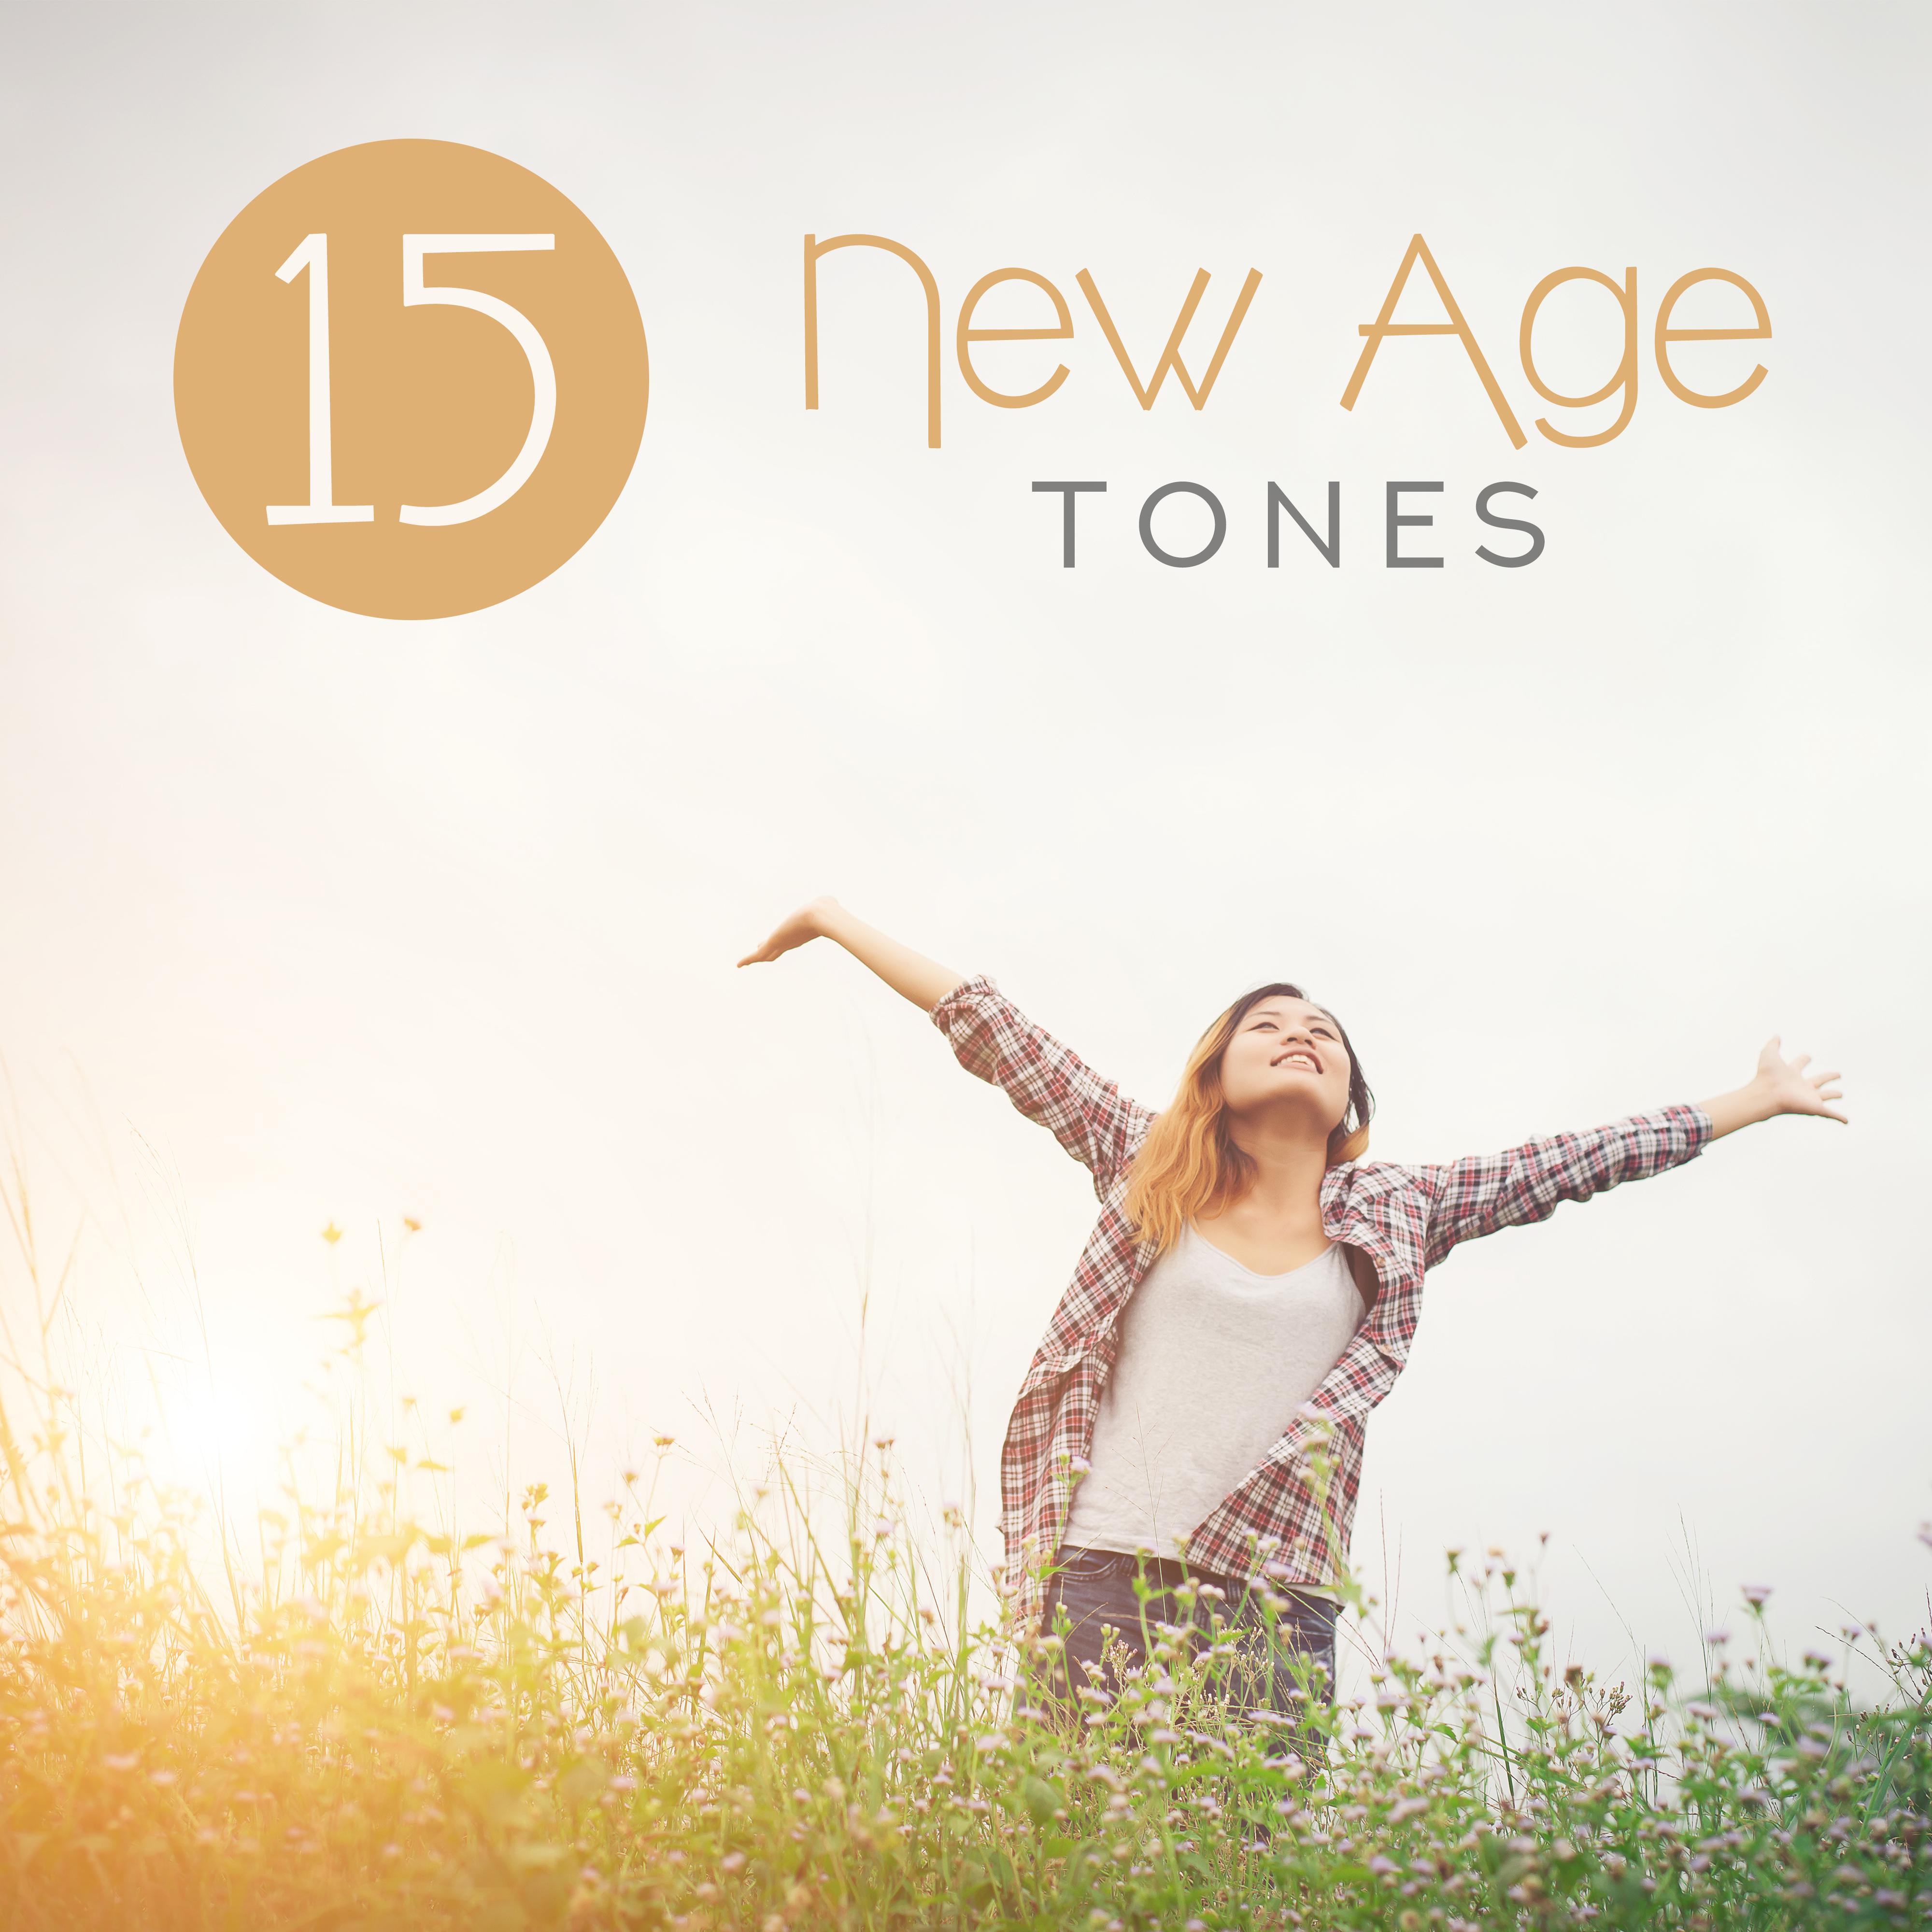 15 New Age Tones